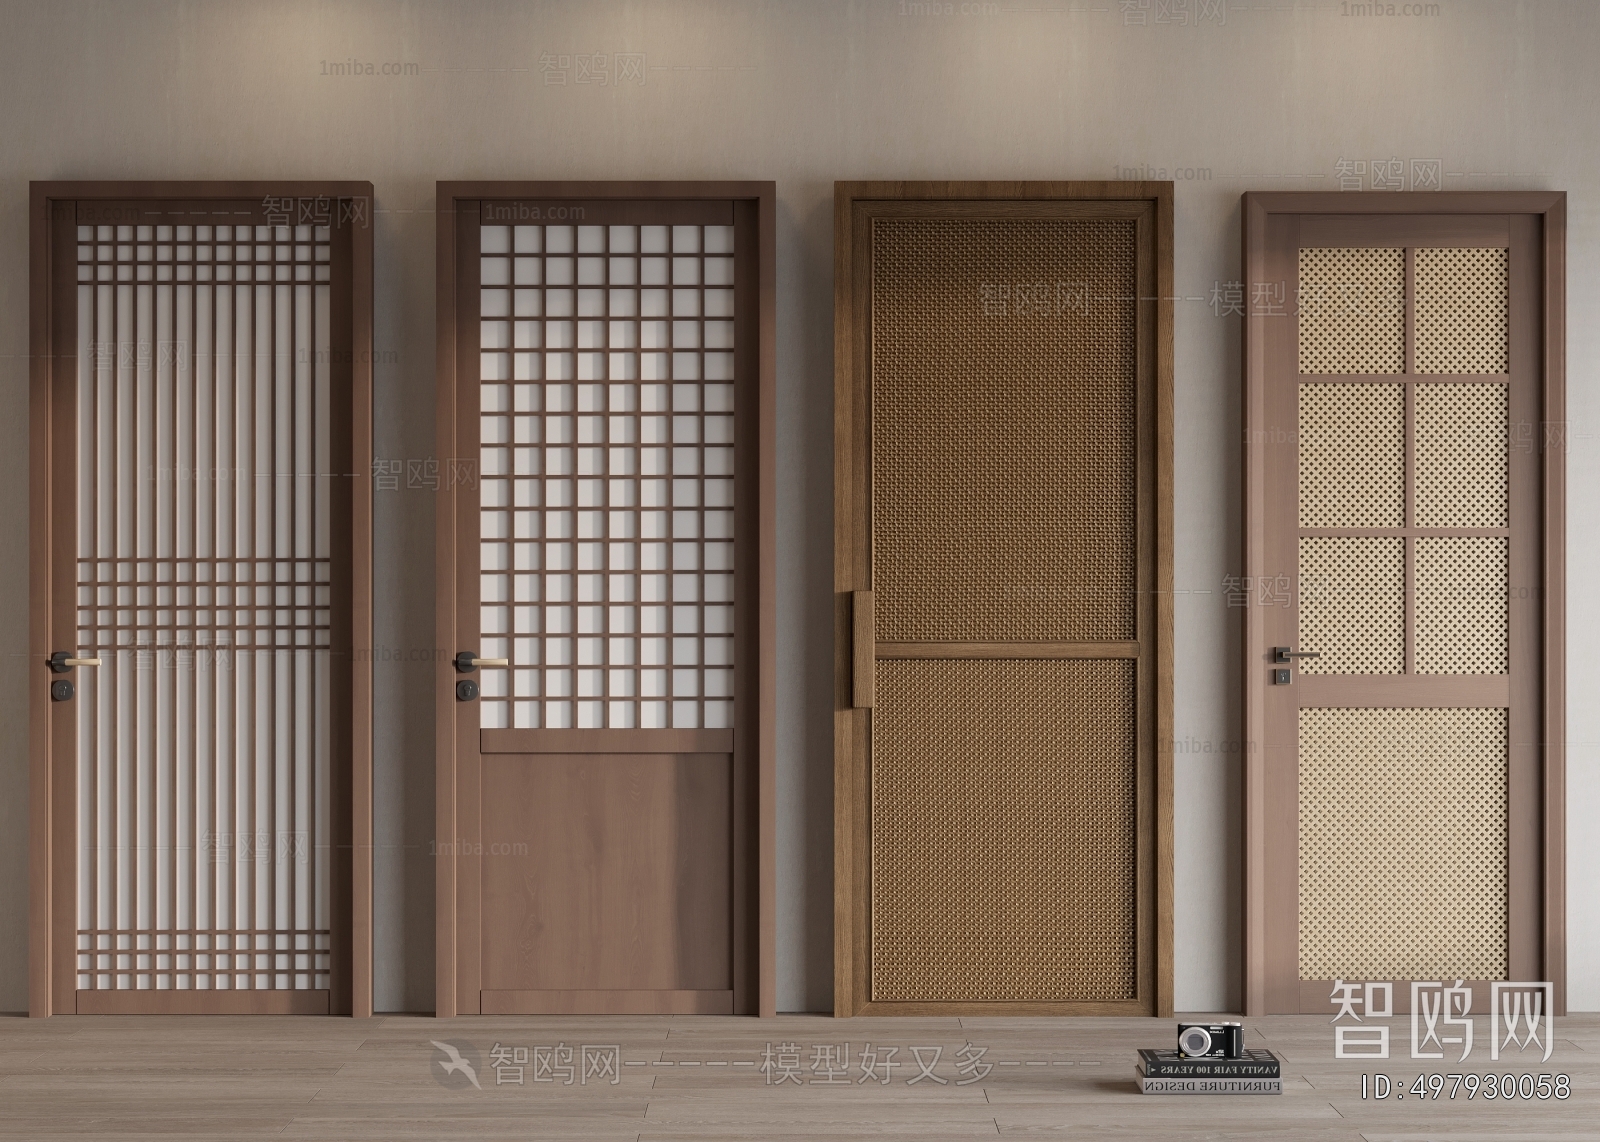 Japanese Style Single Door